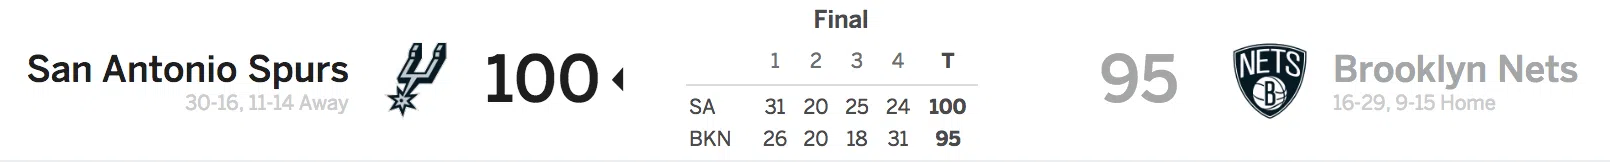 Brooklyn Nets vs San Antonio Spurs 1-17-18 Score